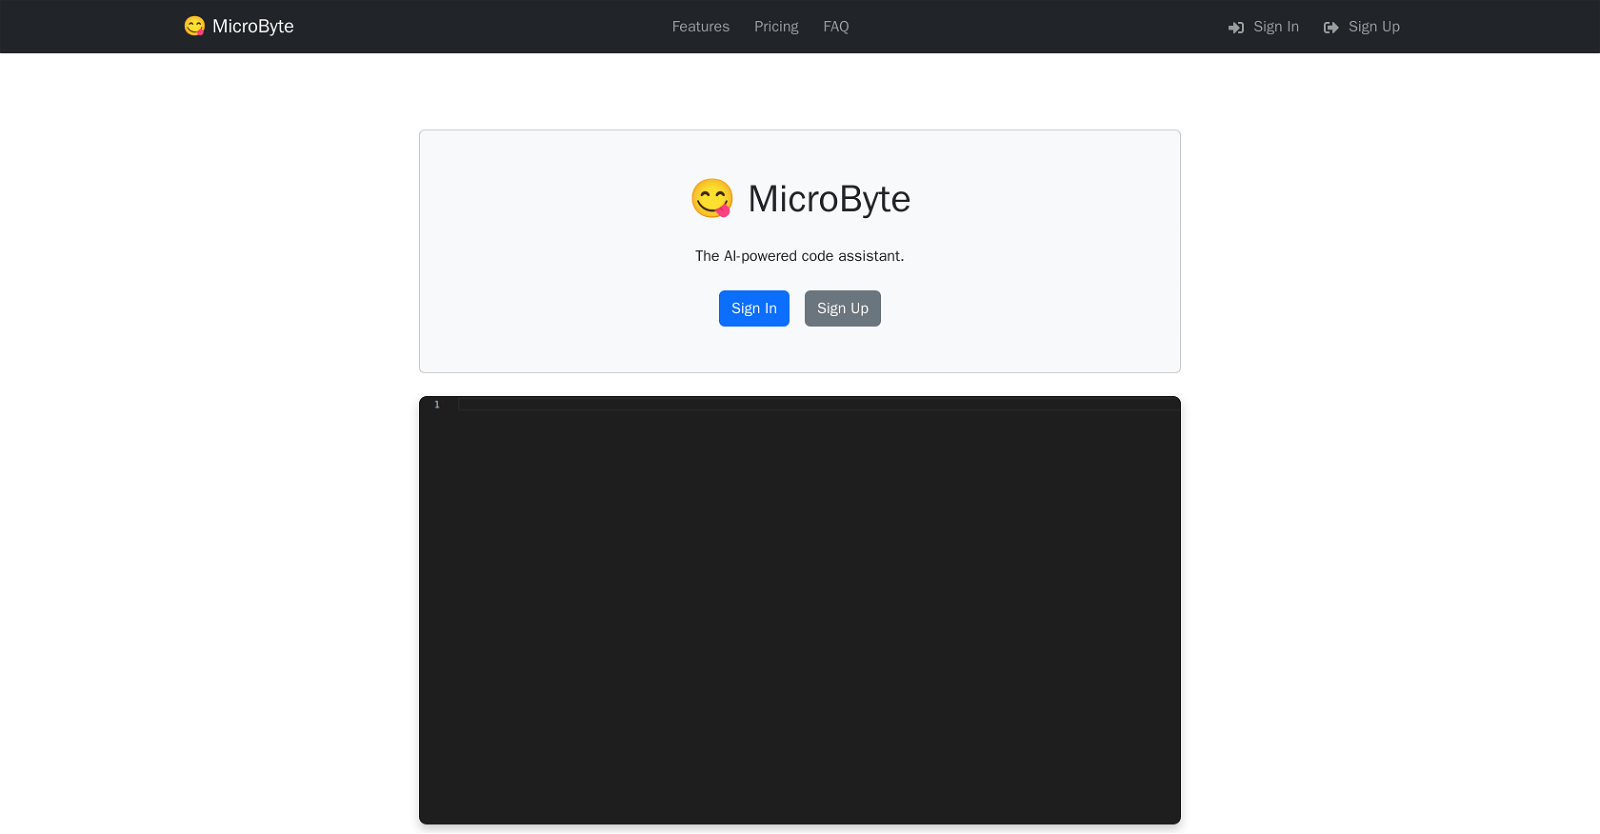 MicroByte website